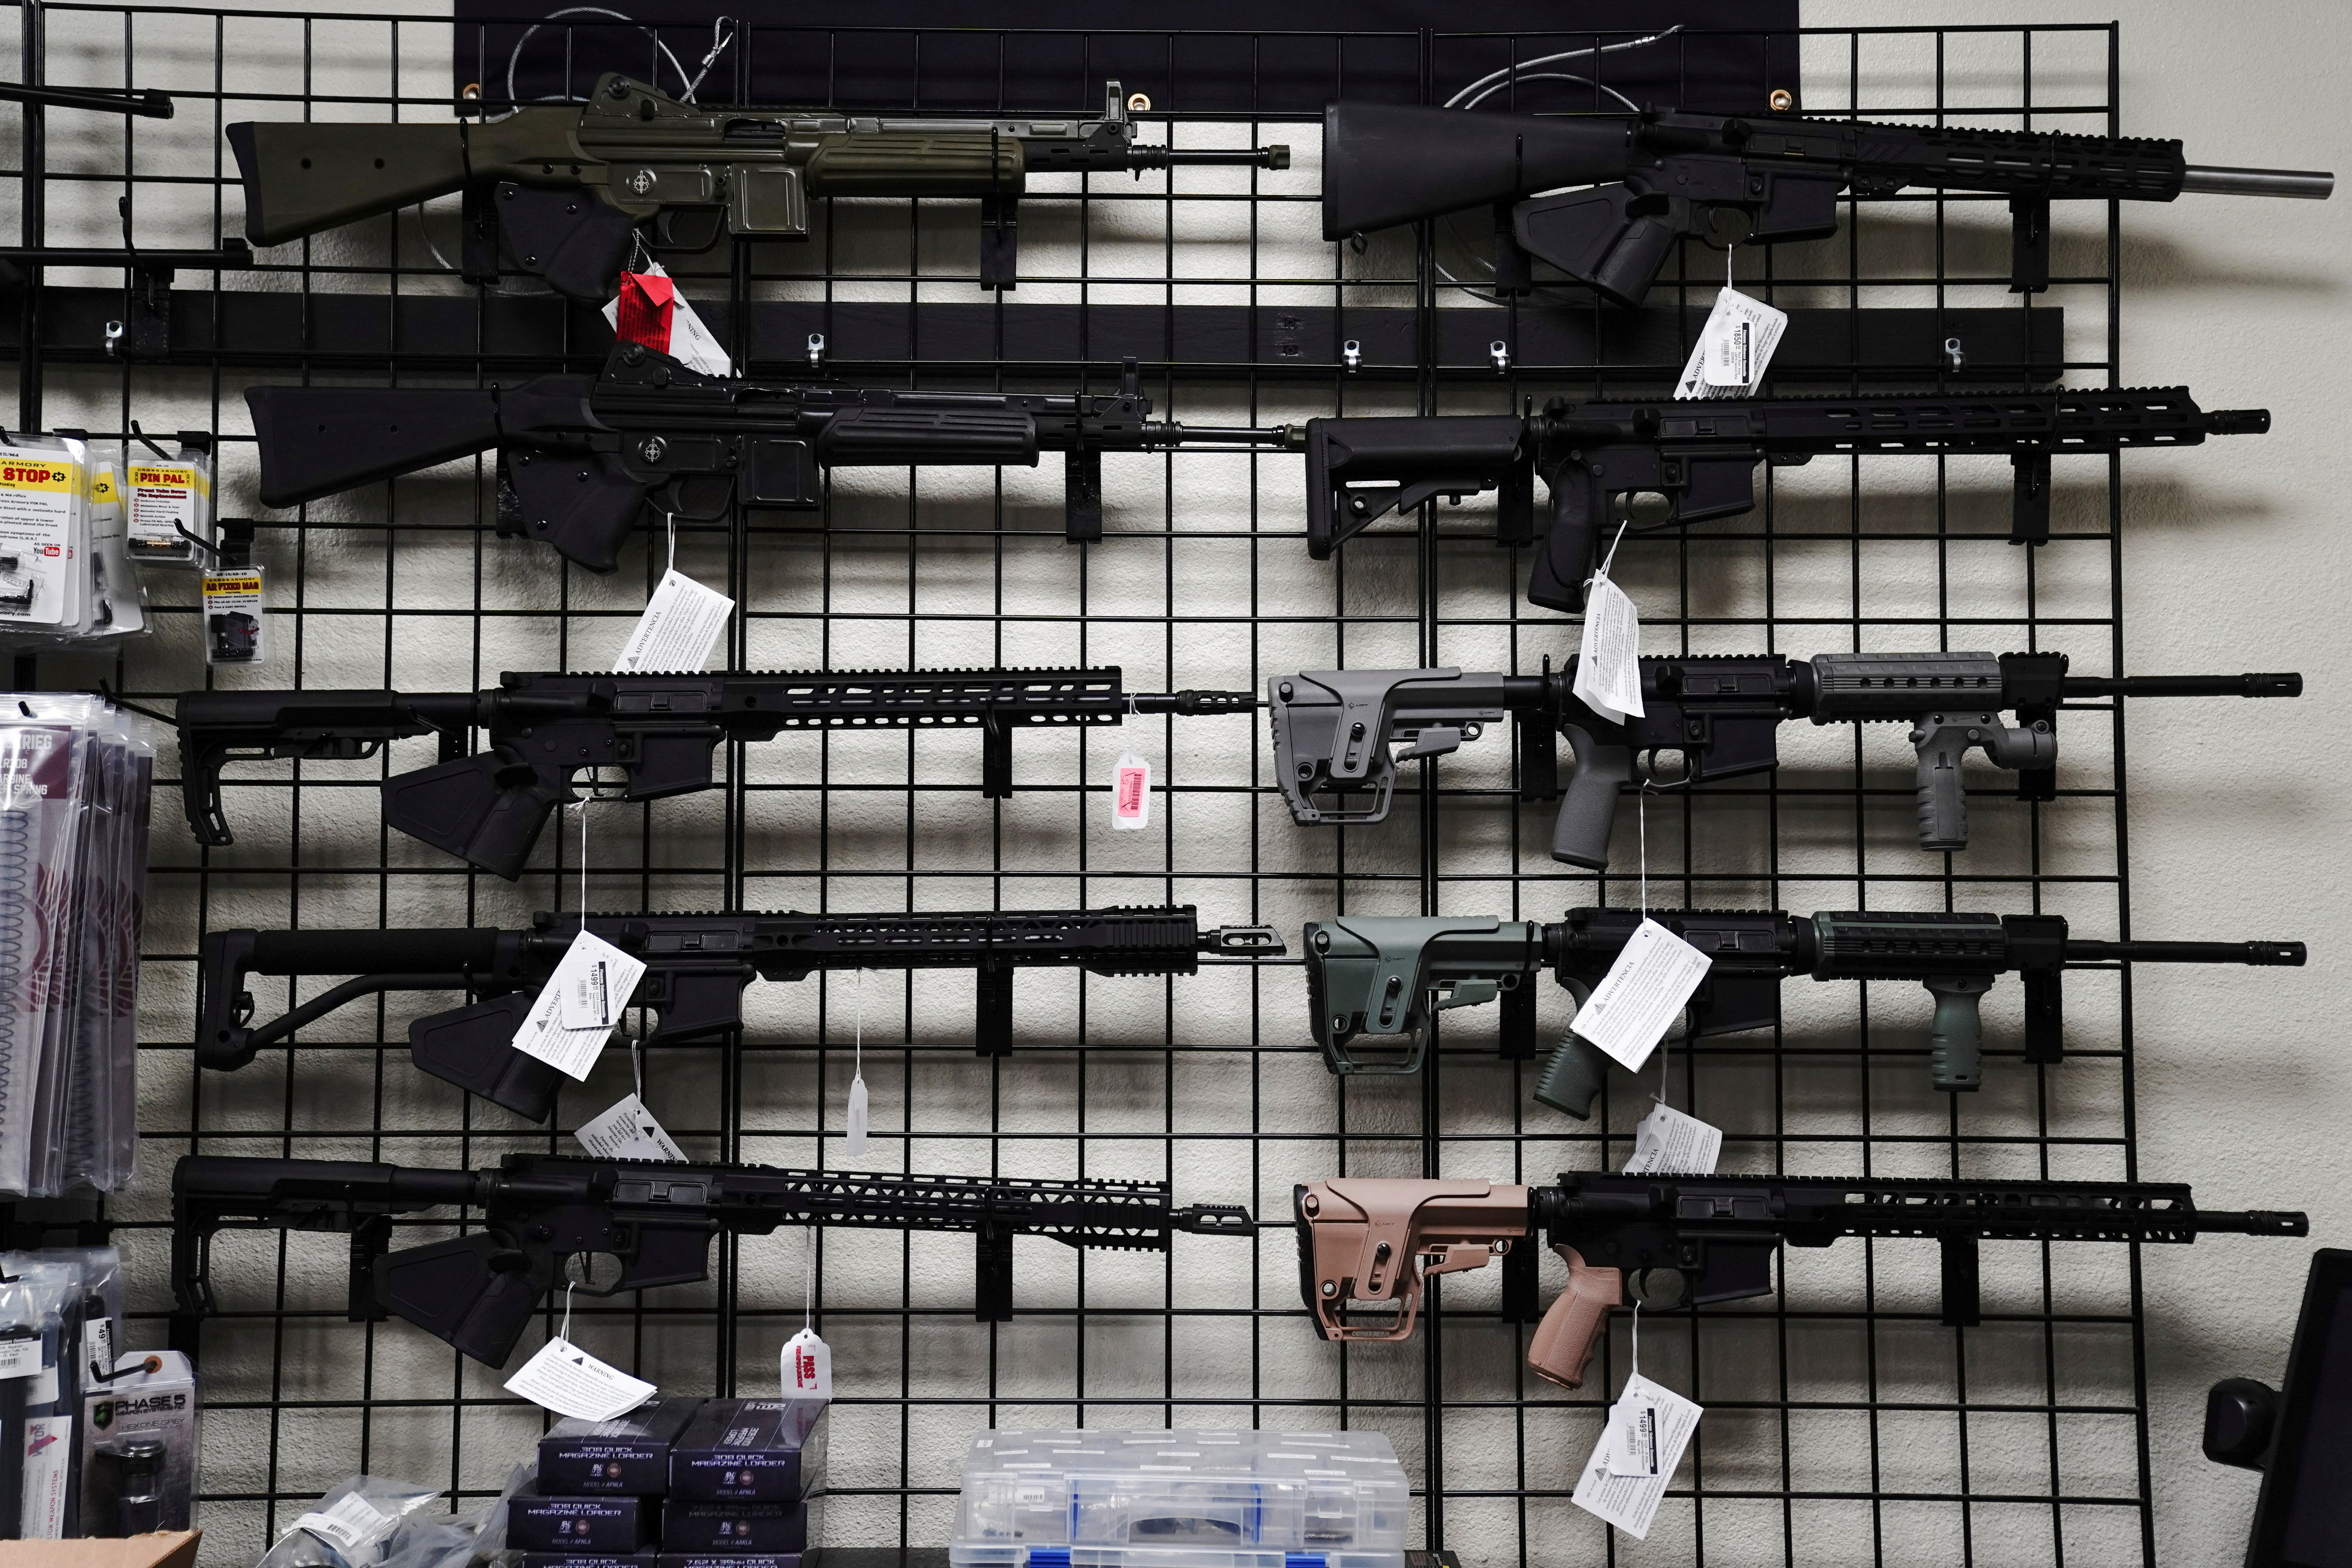 Foto de archivo de rifles estilo AR-15 para la venta en Firearms Unknown, una tienda de armas en Oceanside, California, el 12 de abril de 2021 (REUTERS/Bing Guan)